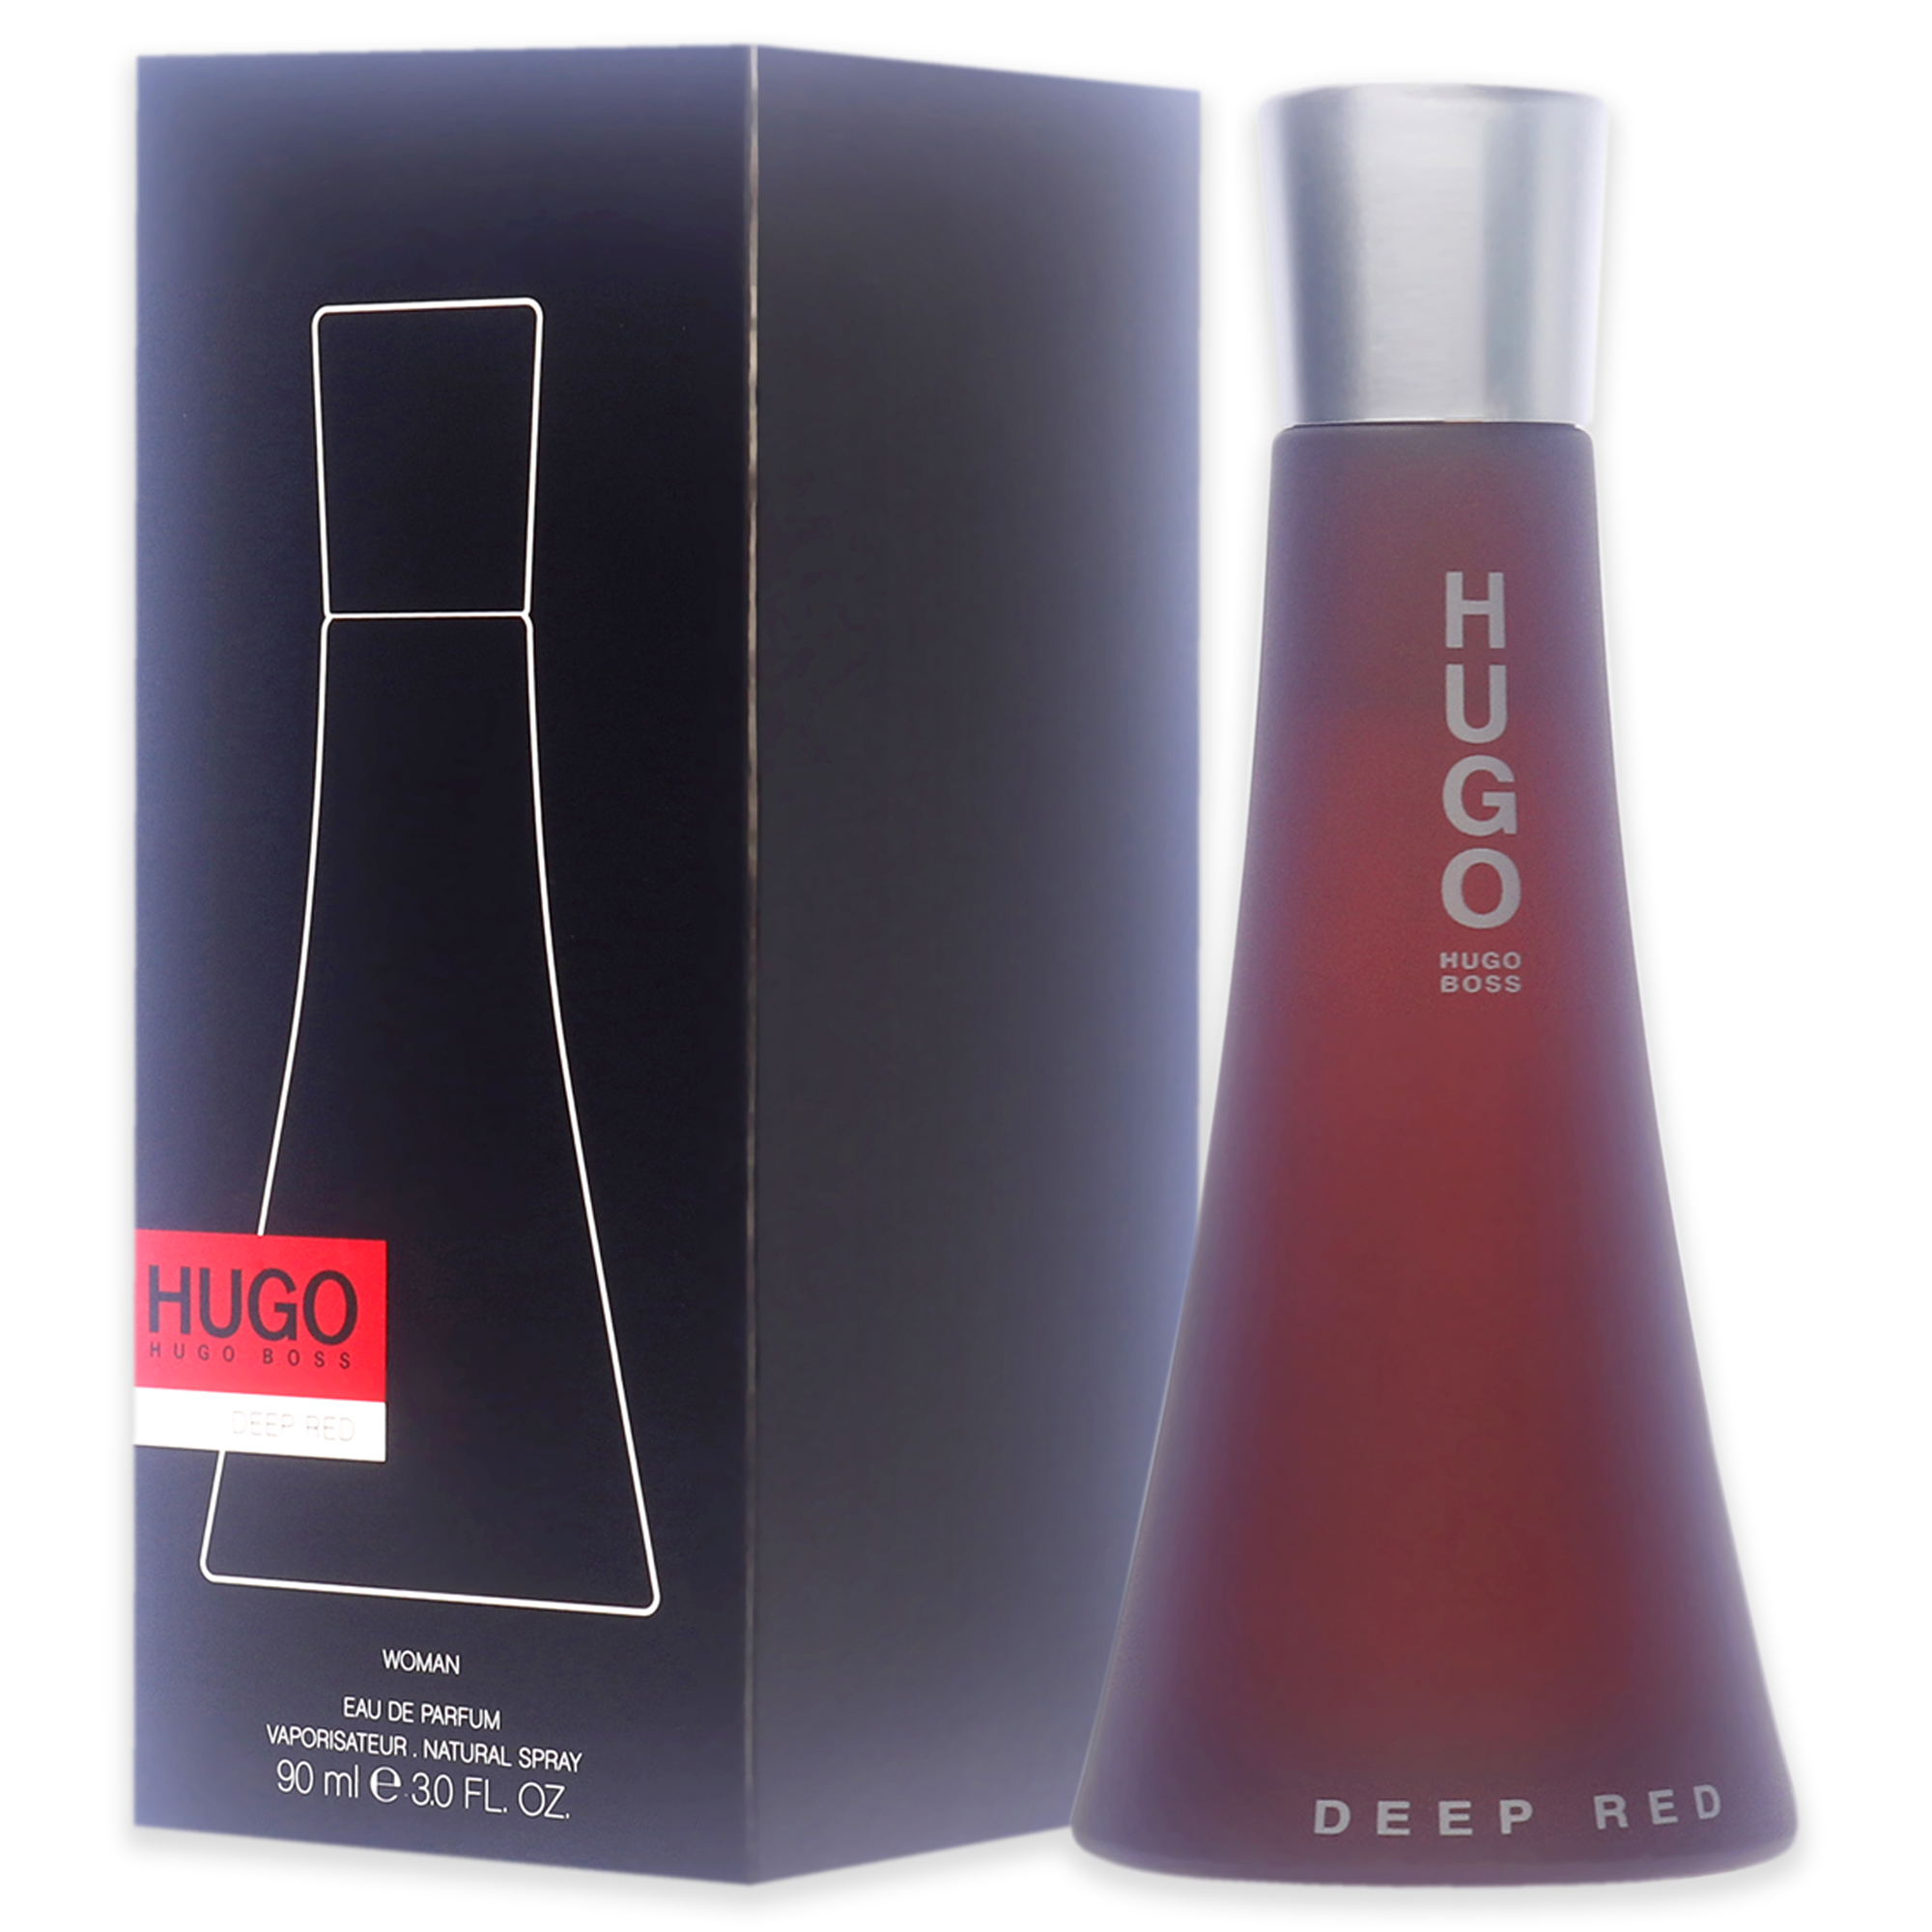 Hugo Boss Deep Red Eau de Parfum, Perfume for Women, 3 oz - image 4 of 6